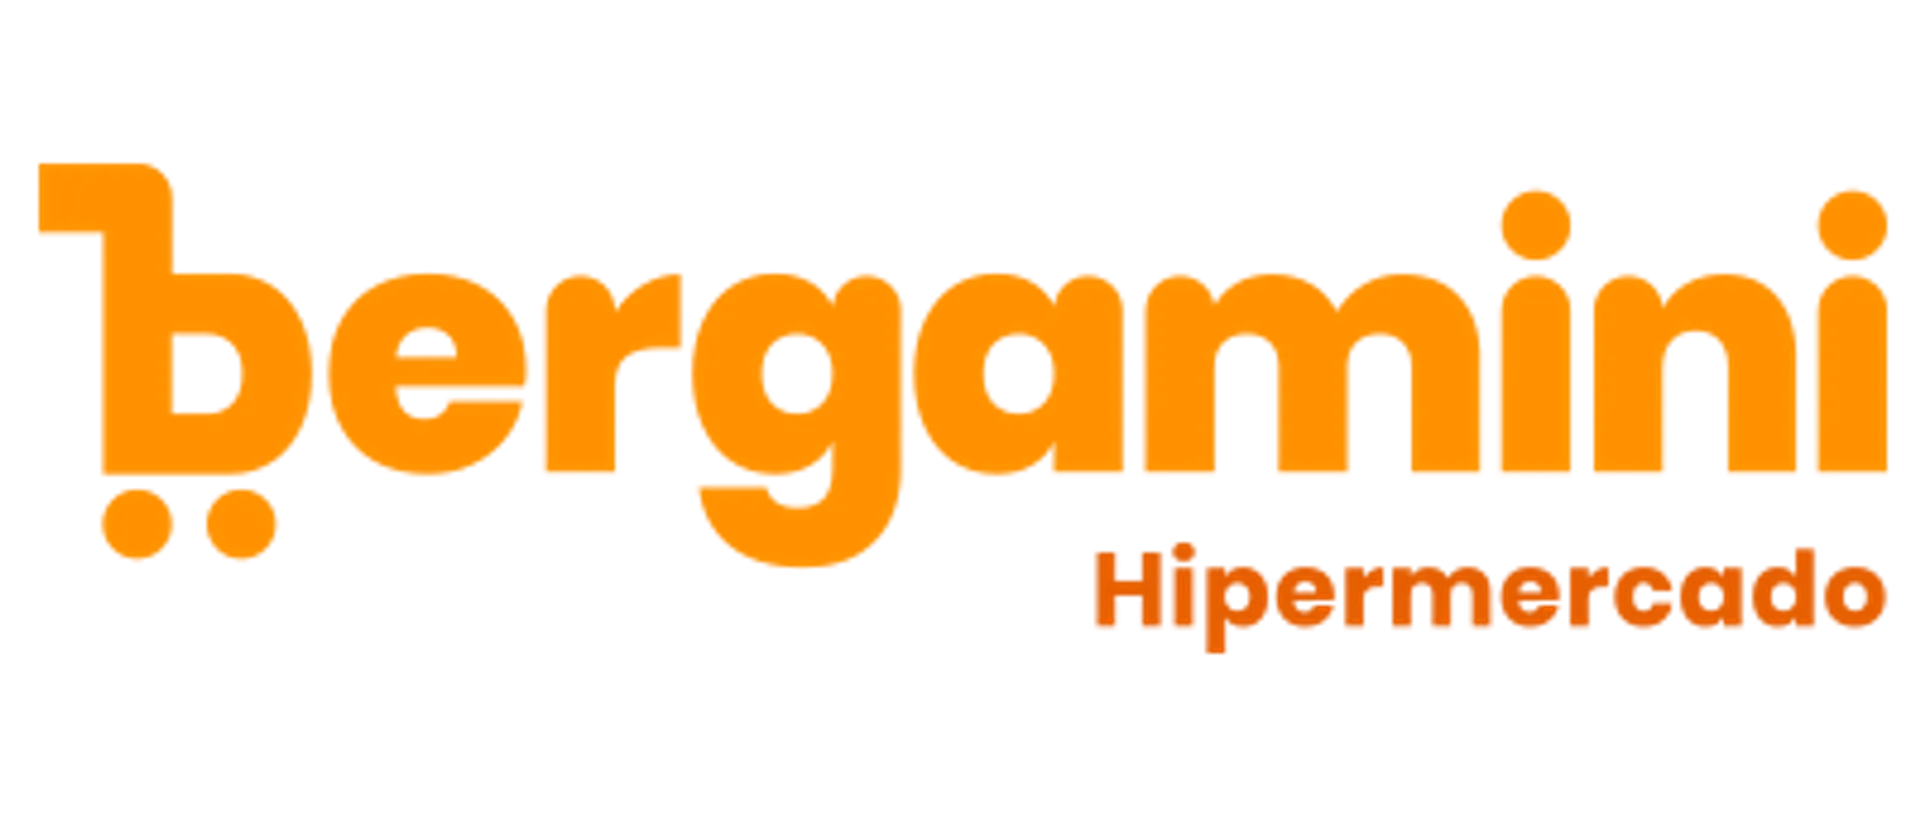 SUPERMERCADO BERGAMINI logo